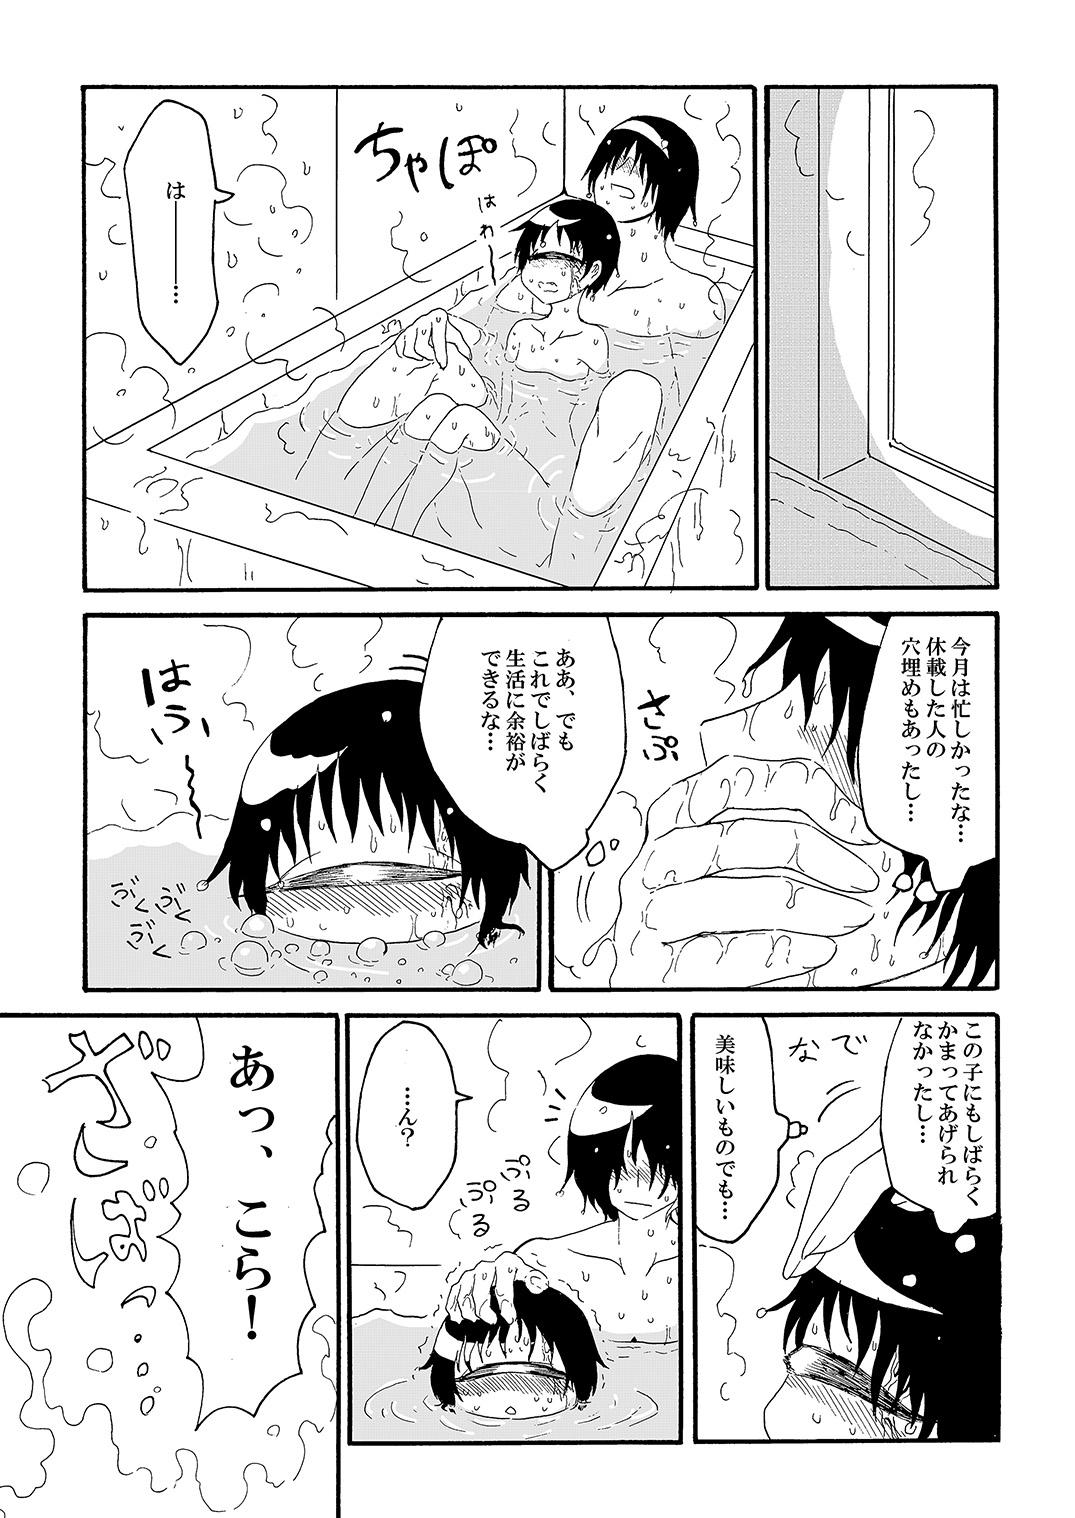 Tangan-chan Hirotte Kau Manga 8